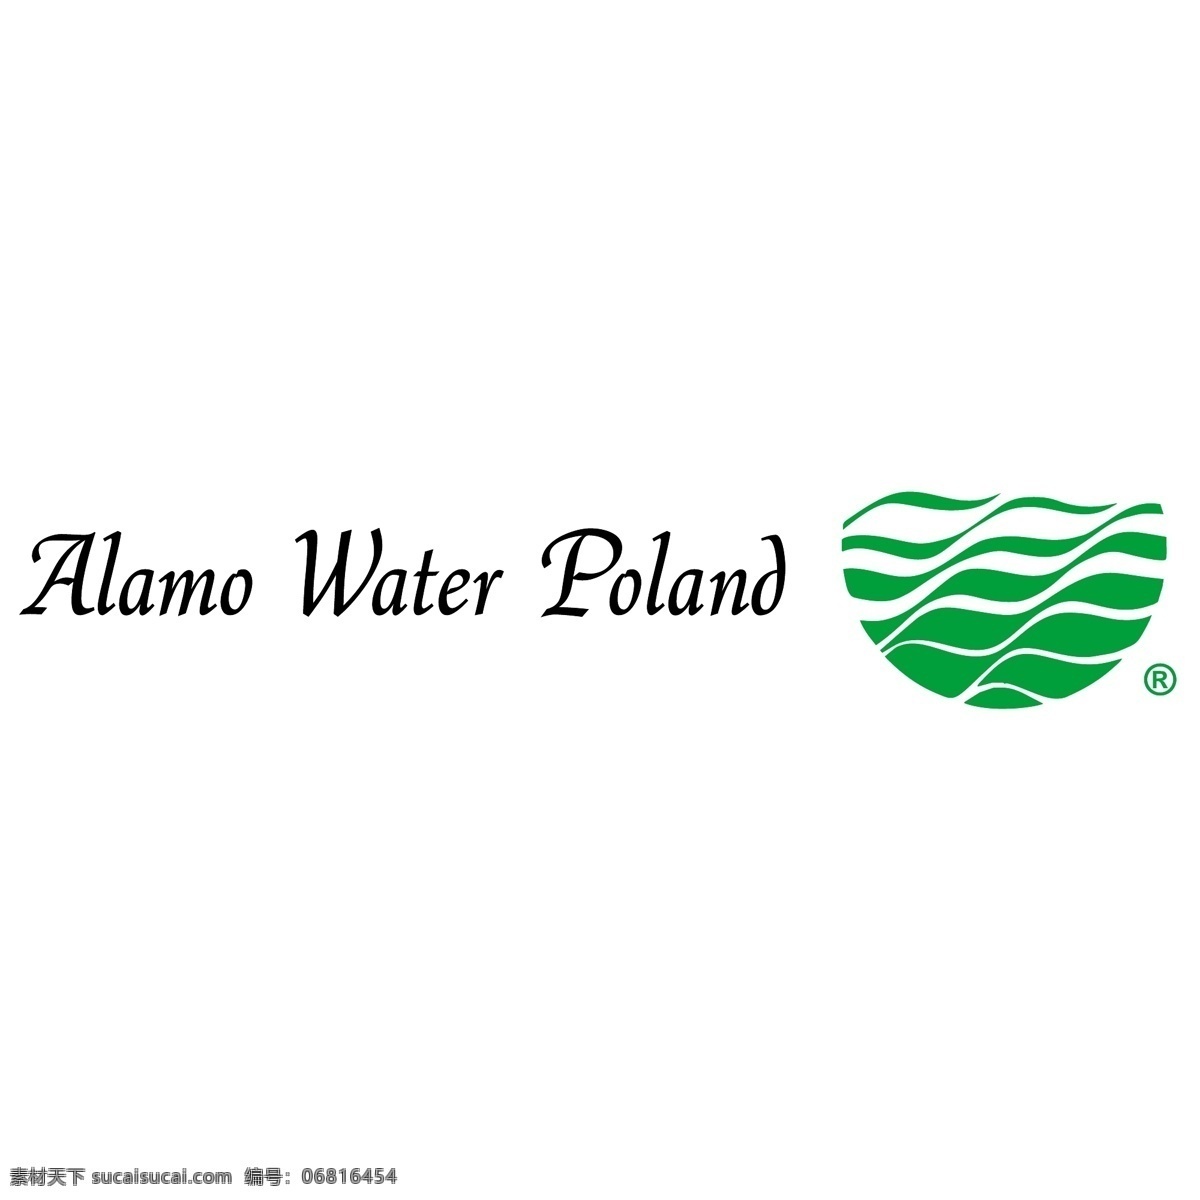 波兰 州 水 免费 阿拉莫 标志 标识 psd源文件 logo设计